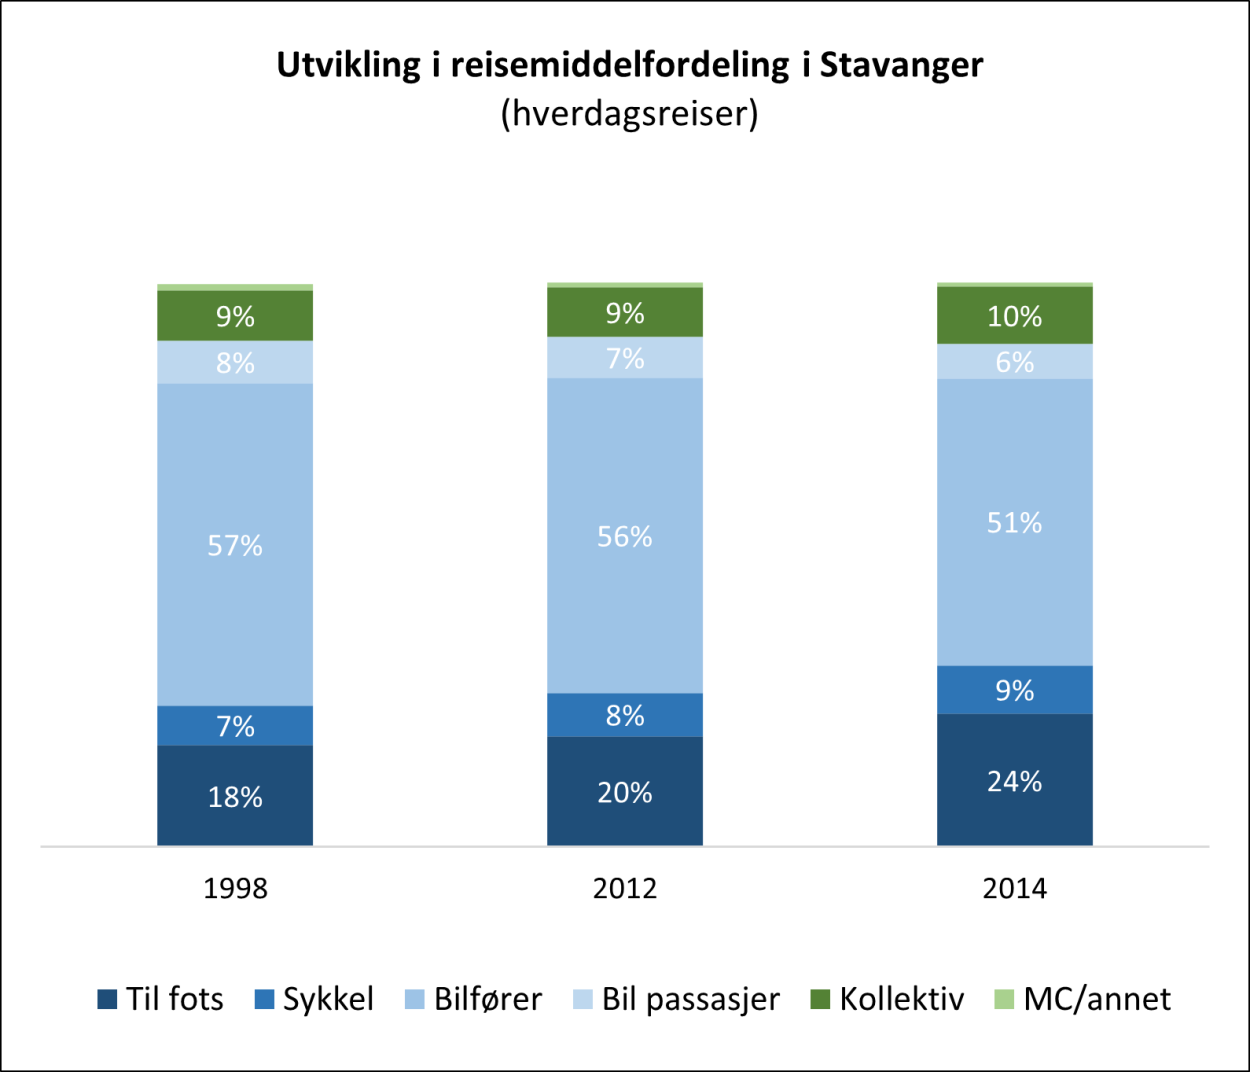 Figur 4 Utvikling i reisemiddelfordeling i Stavanger
Kilde: Reisevaneundersøkelser (RVU) 1998, 2012 og 2014
